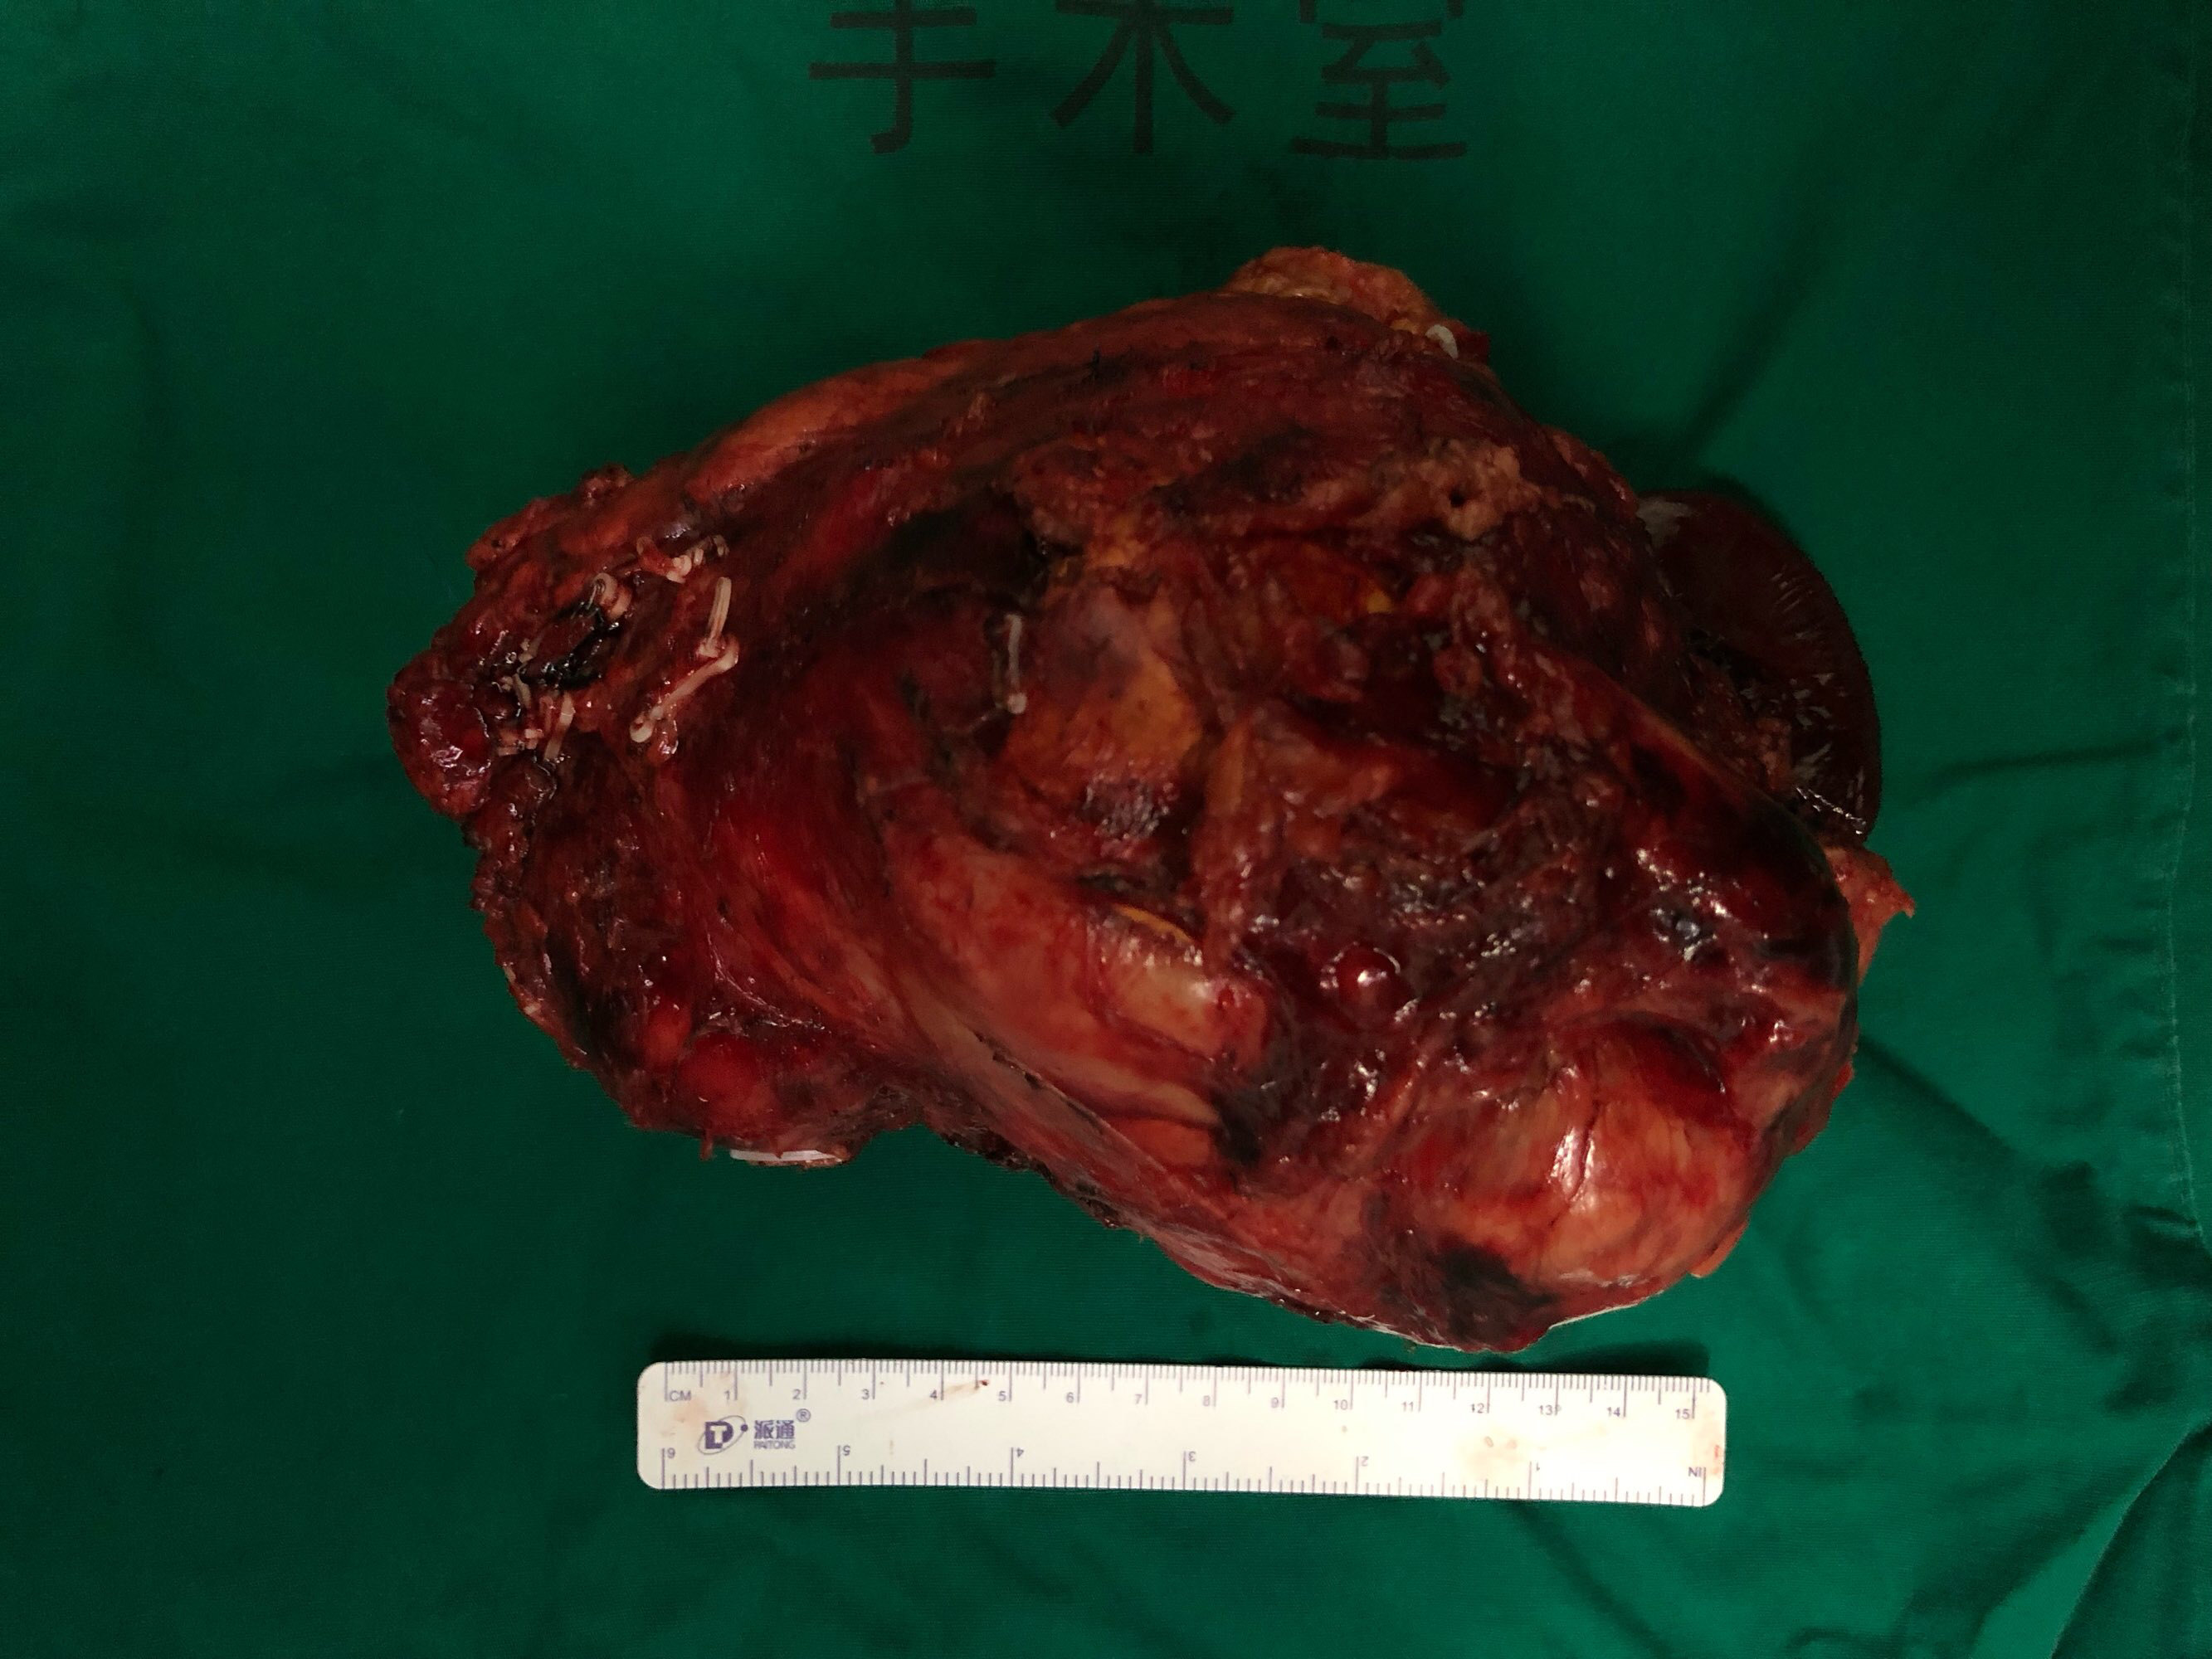 腹膜后肿瘤平滑肌肉瘤图片